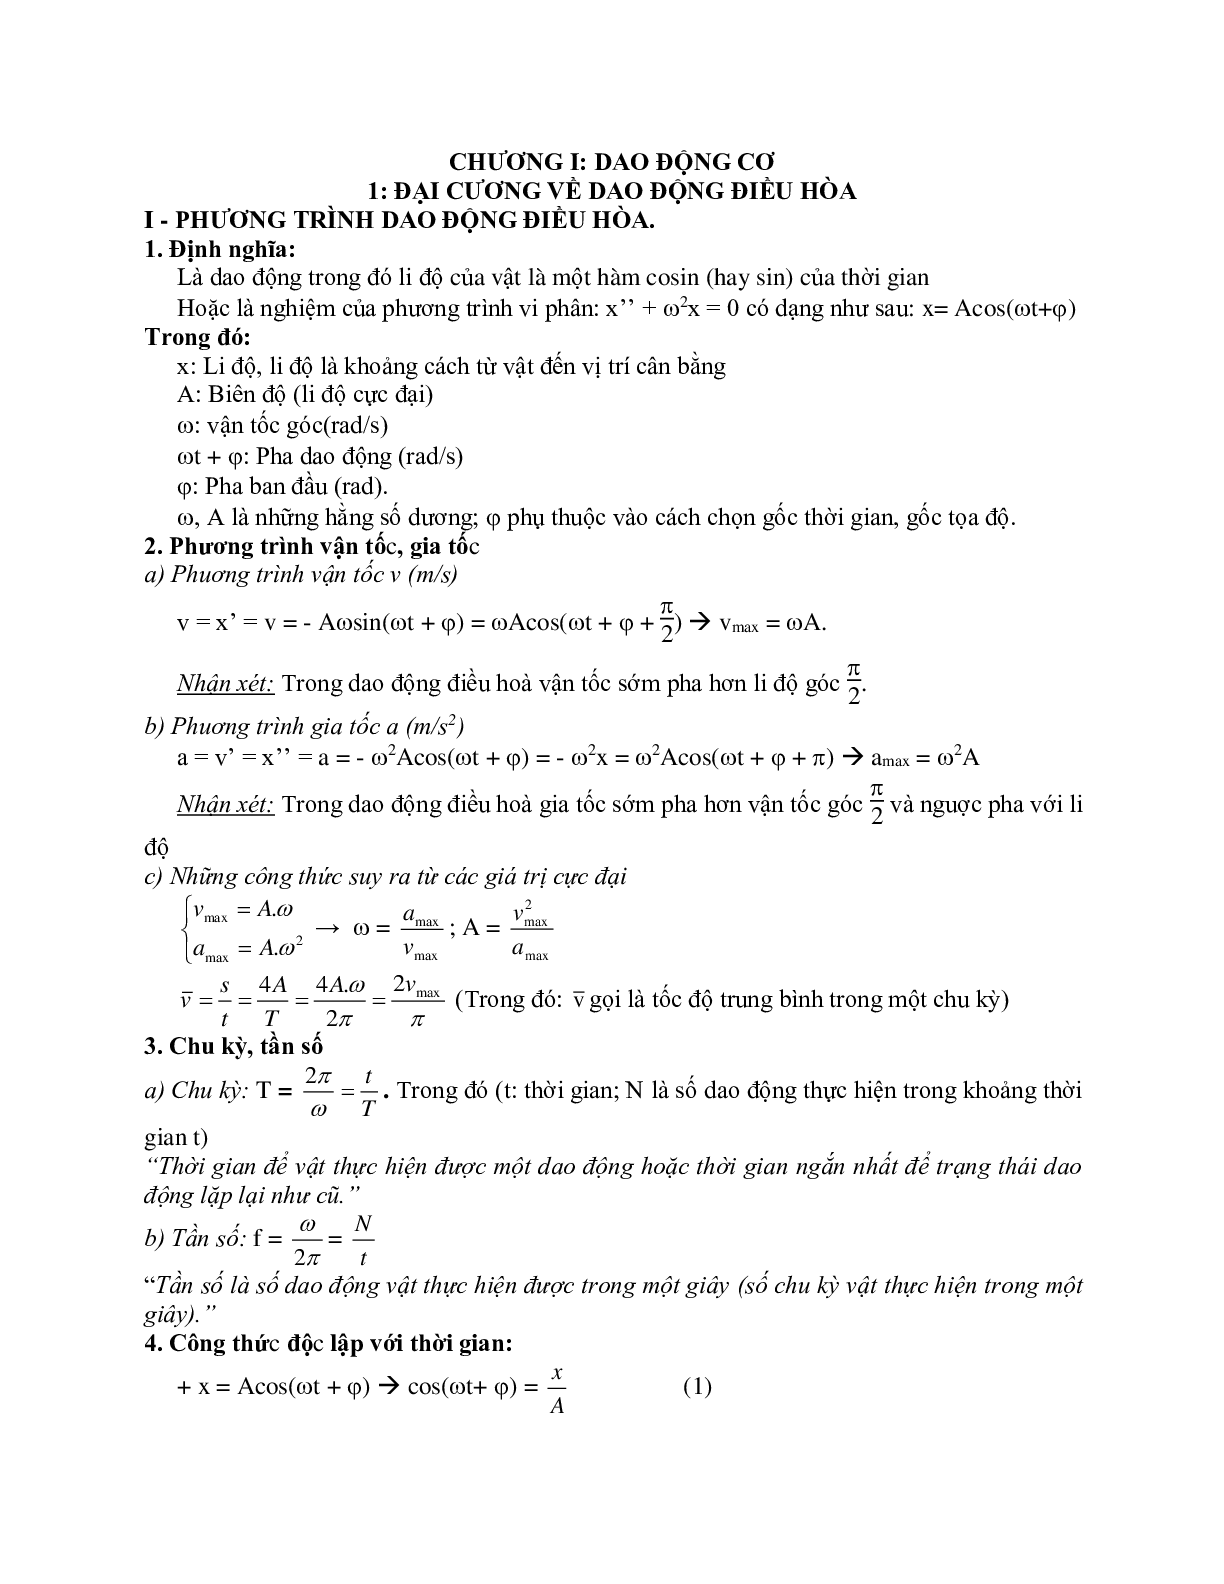 Chuyên đề Dao động cơ môn Vật lý lớp 12 (trang 1)